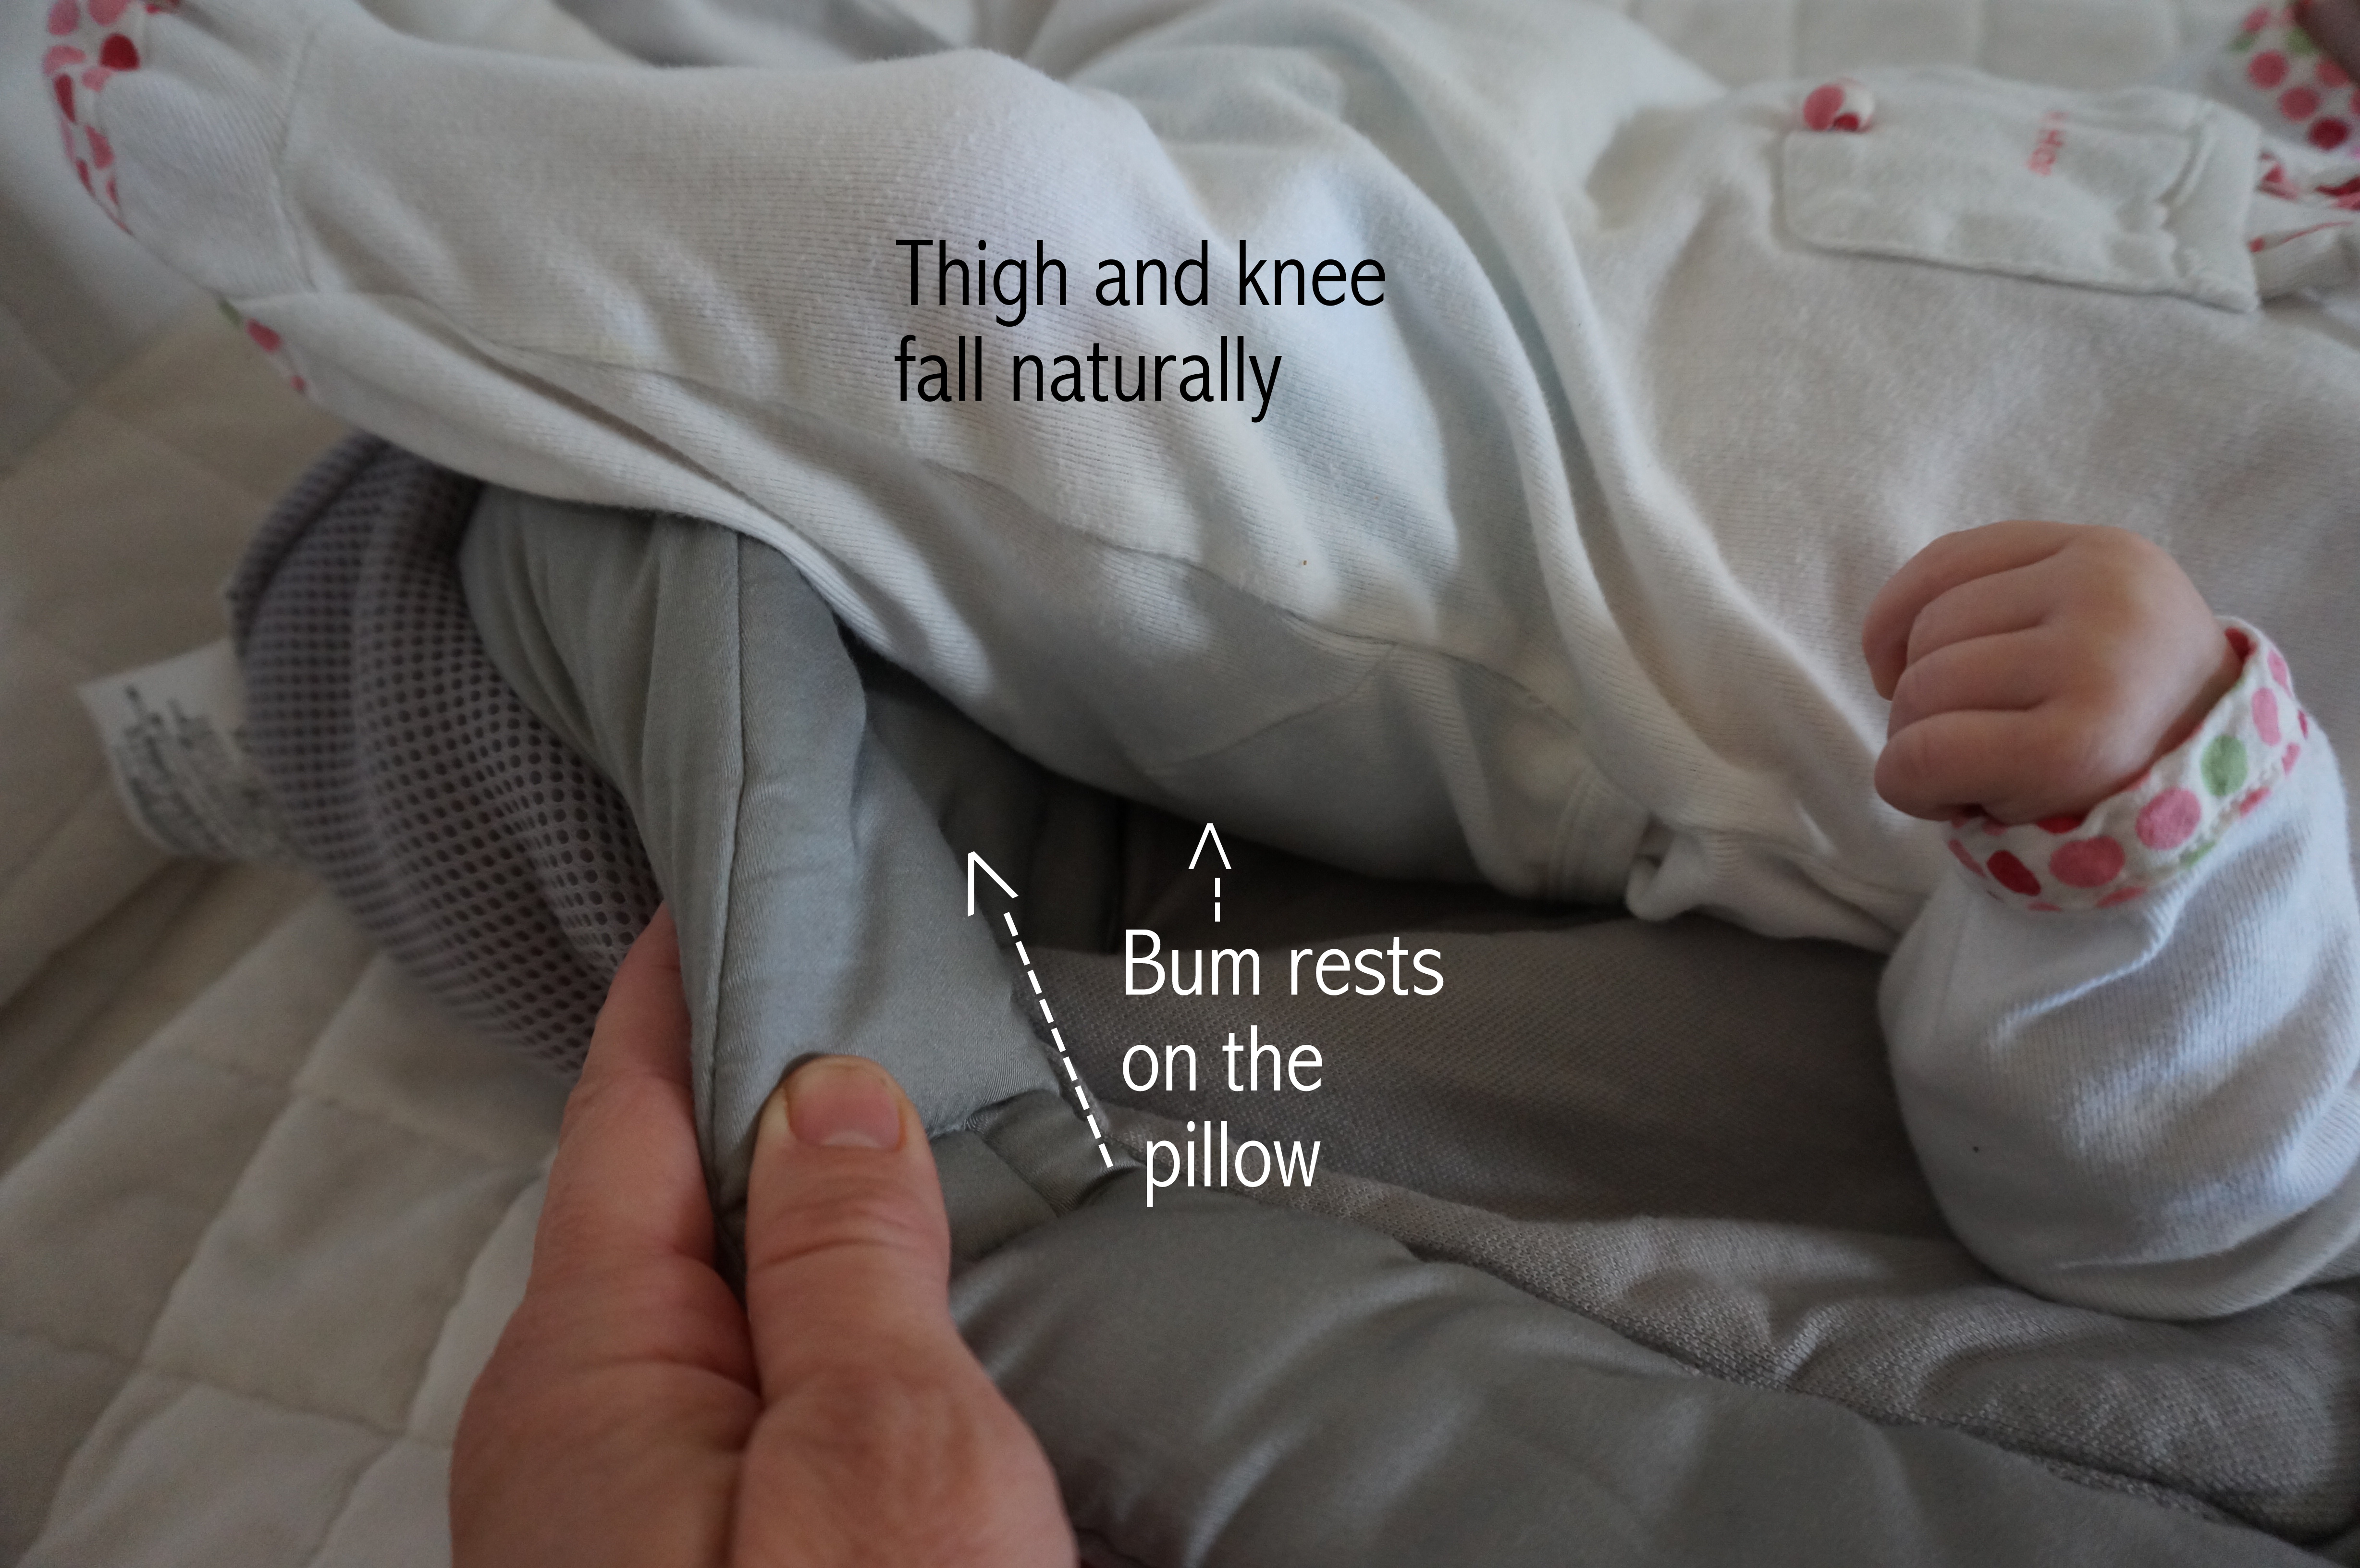 ergo baby carrier infant insert leg position